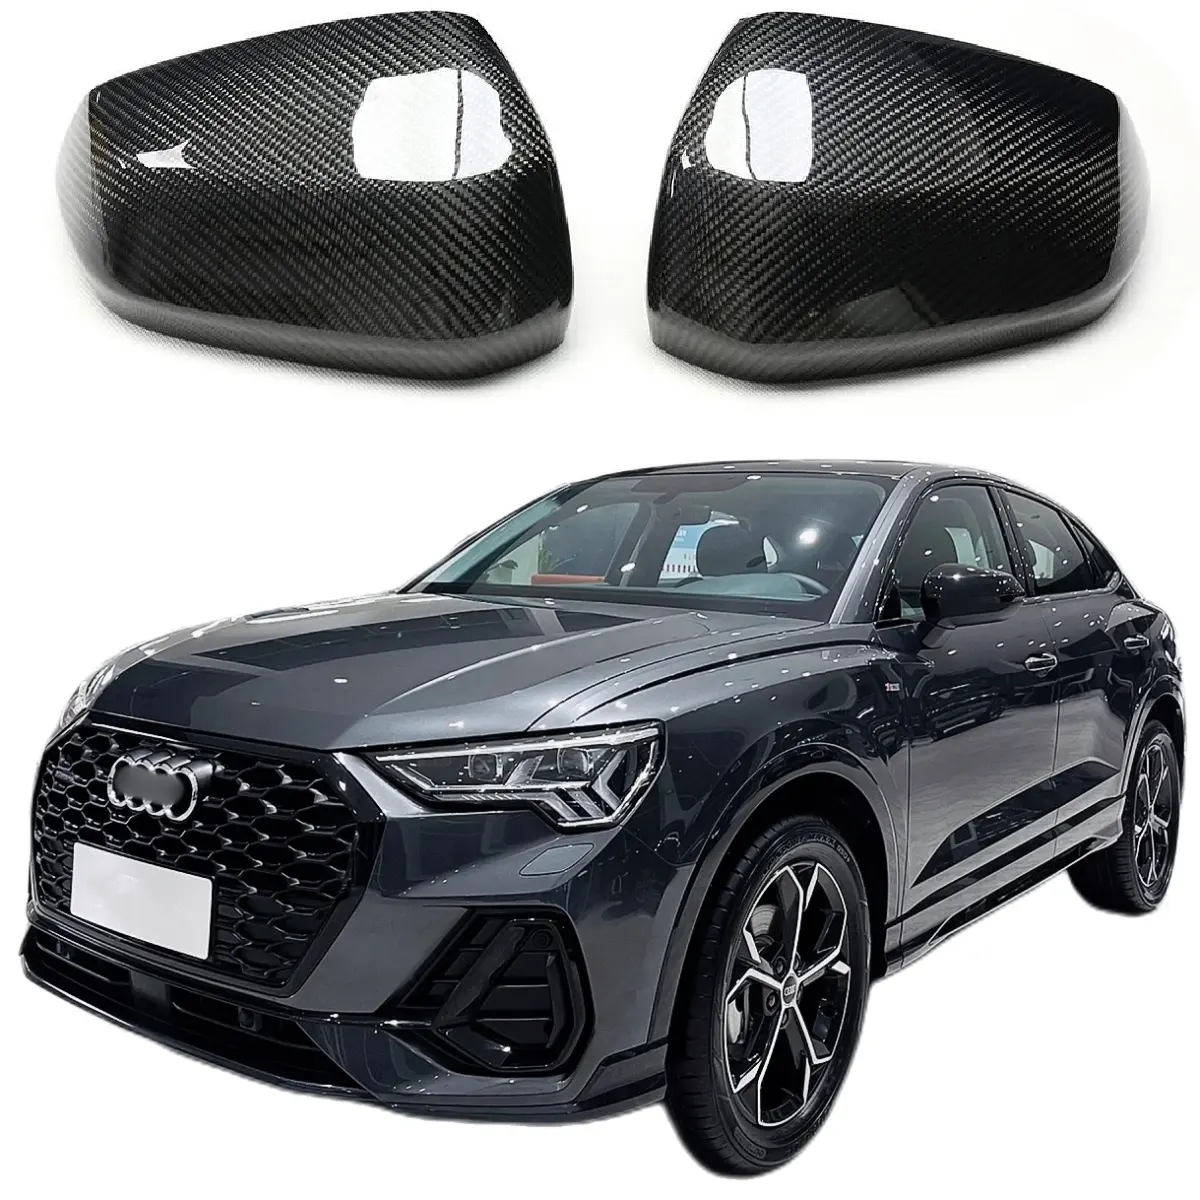 Cubierta de espejo retrovisor lateral de fibra de carbono para coche, reemplazo de carcasa de espejo de puerta lateral para Audi Q2 SQ2 Q3 RSQ3